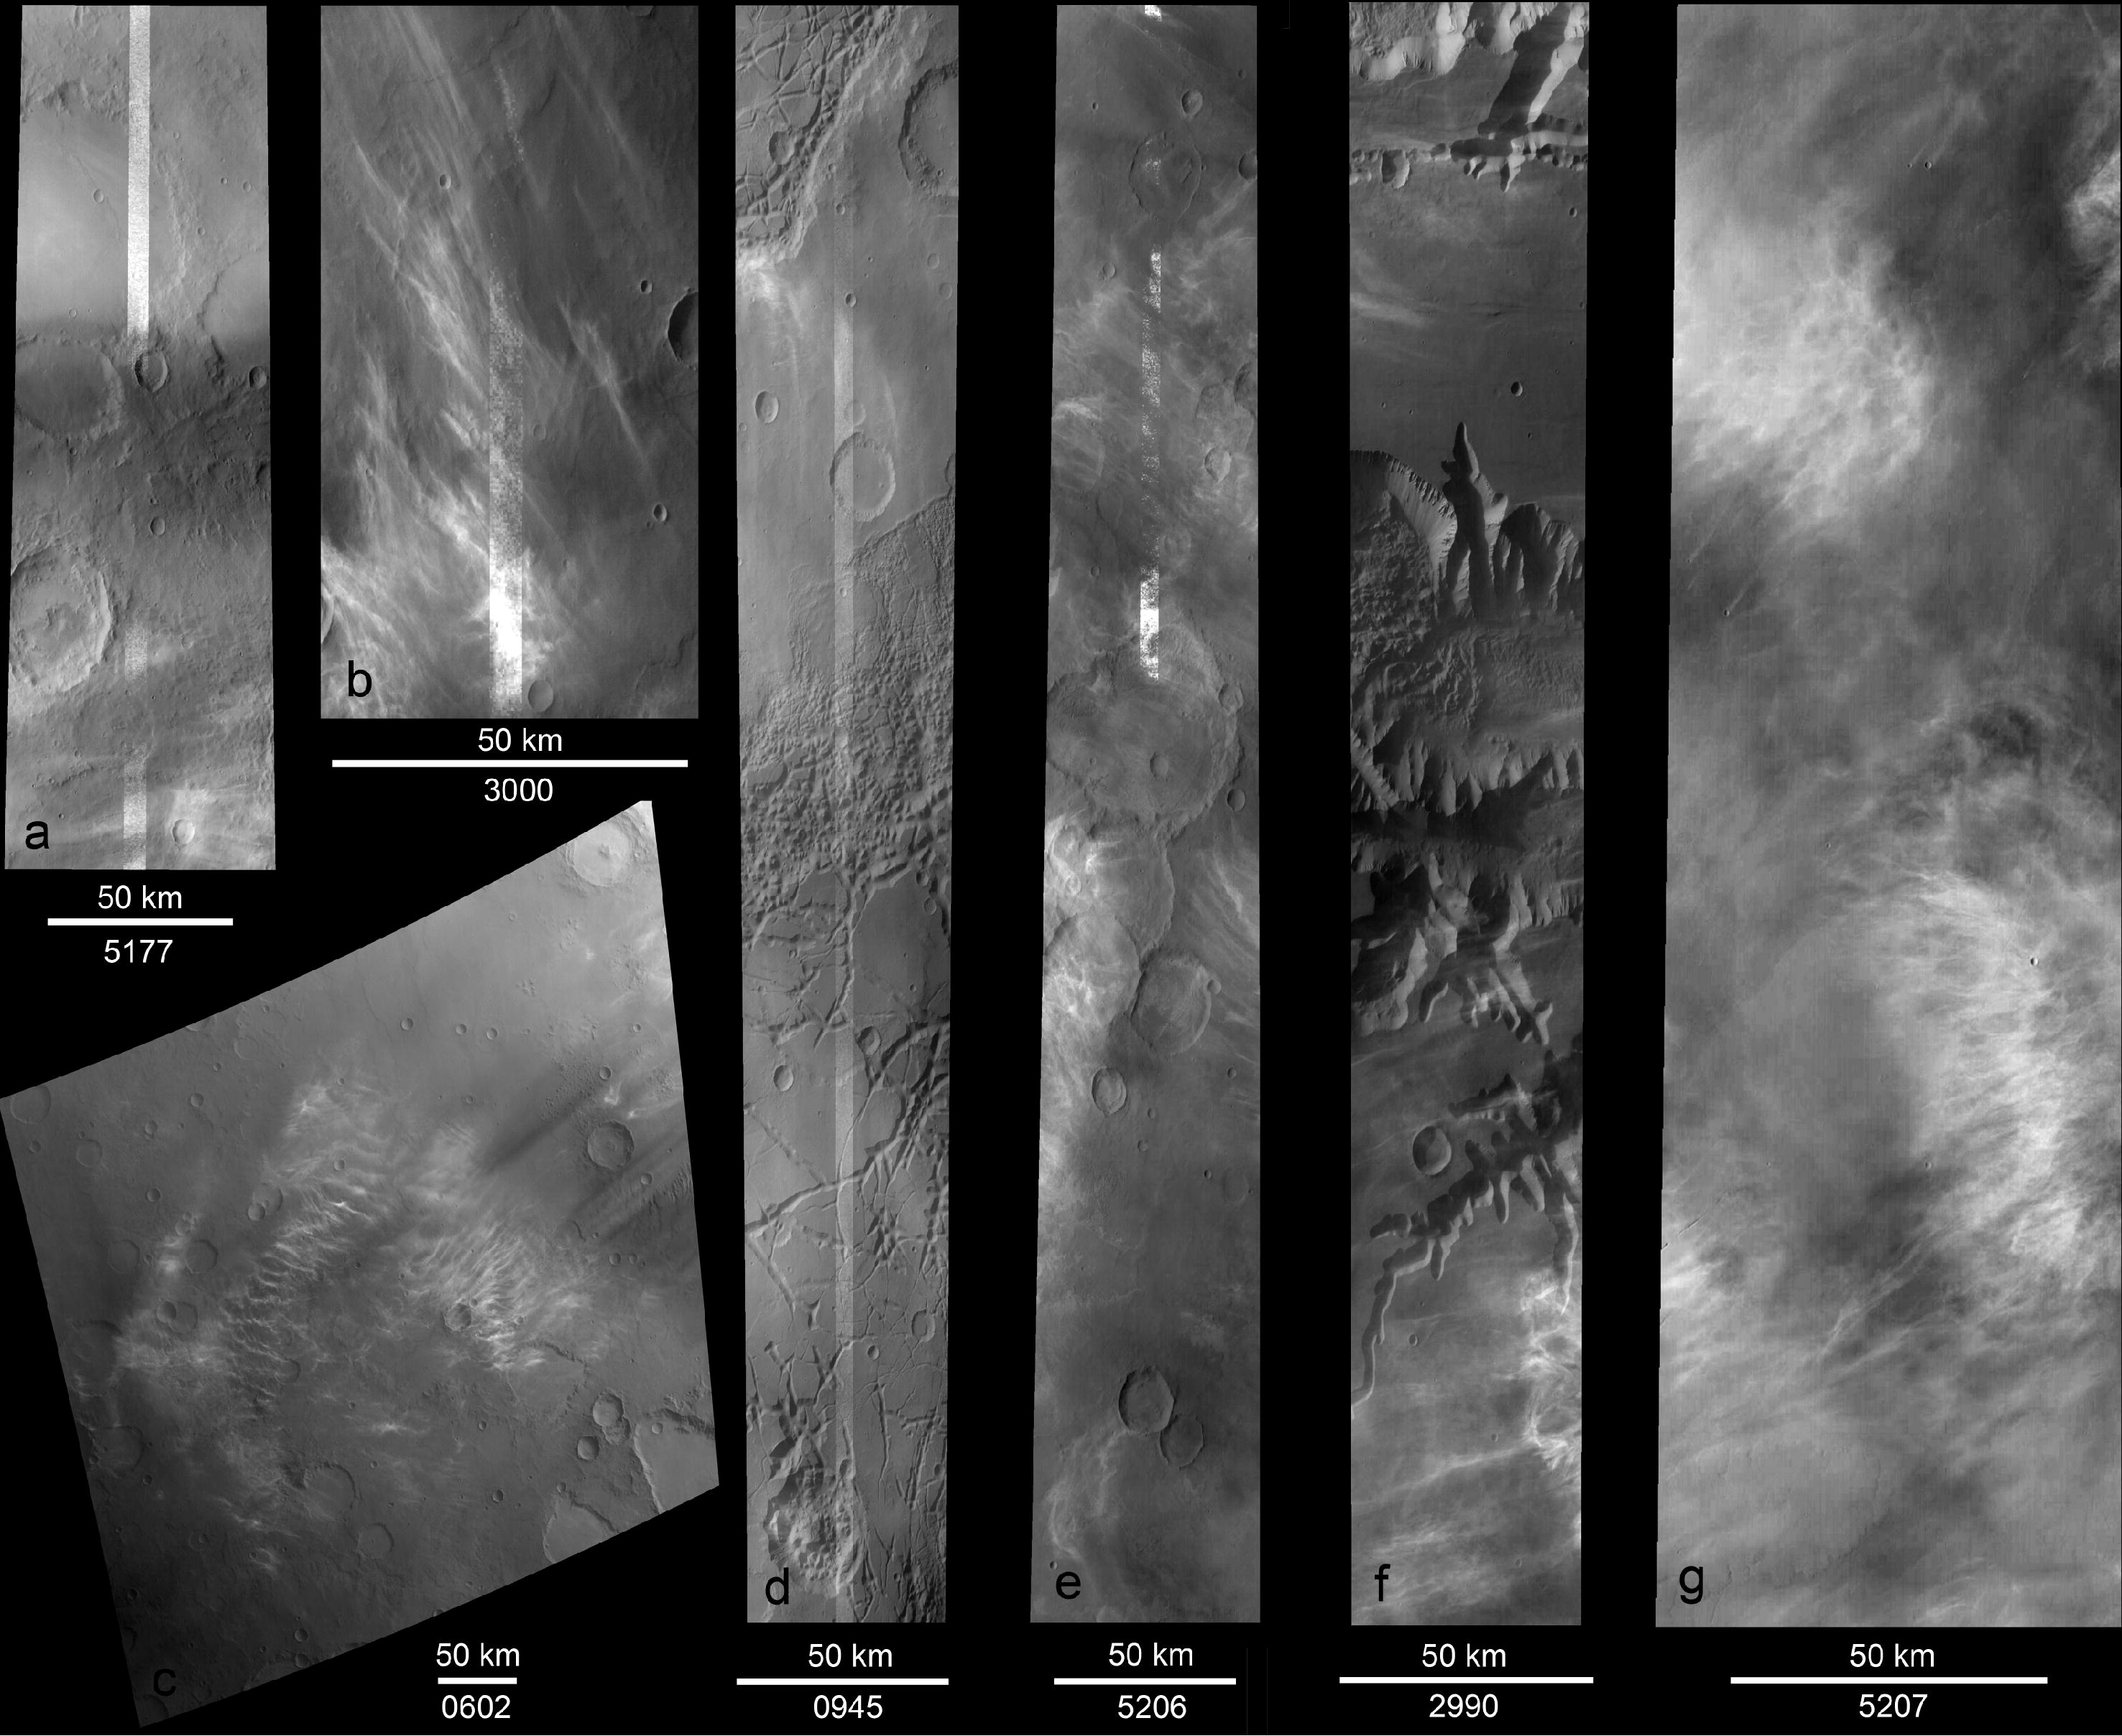 Mars CO2 mesospheric clouds